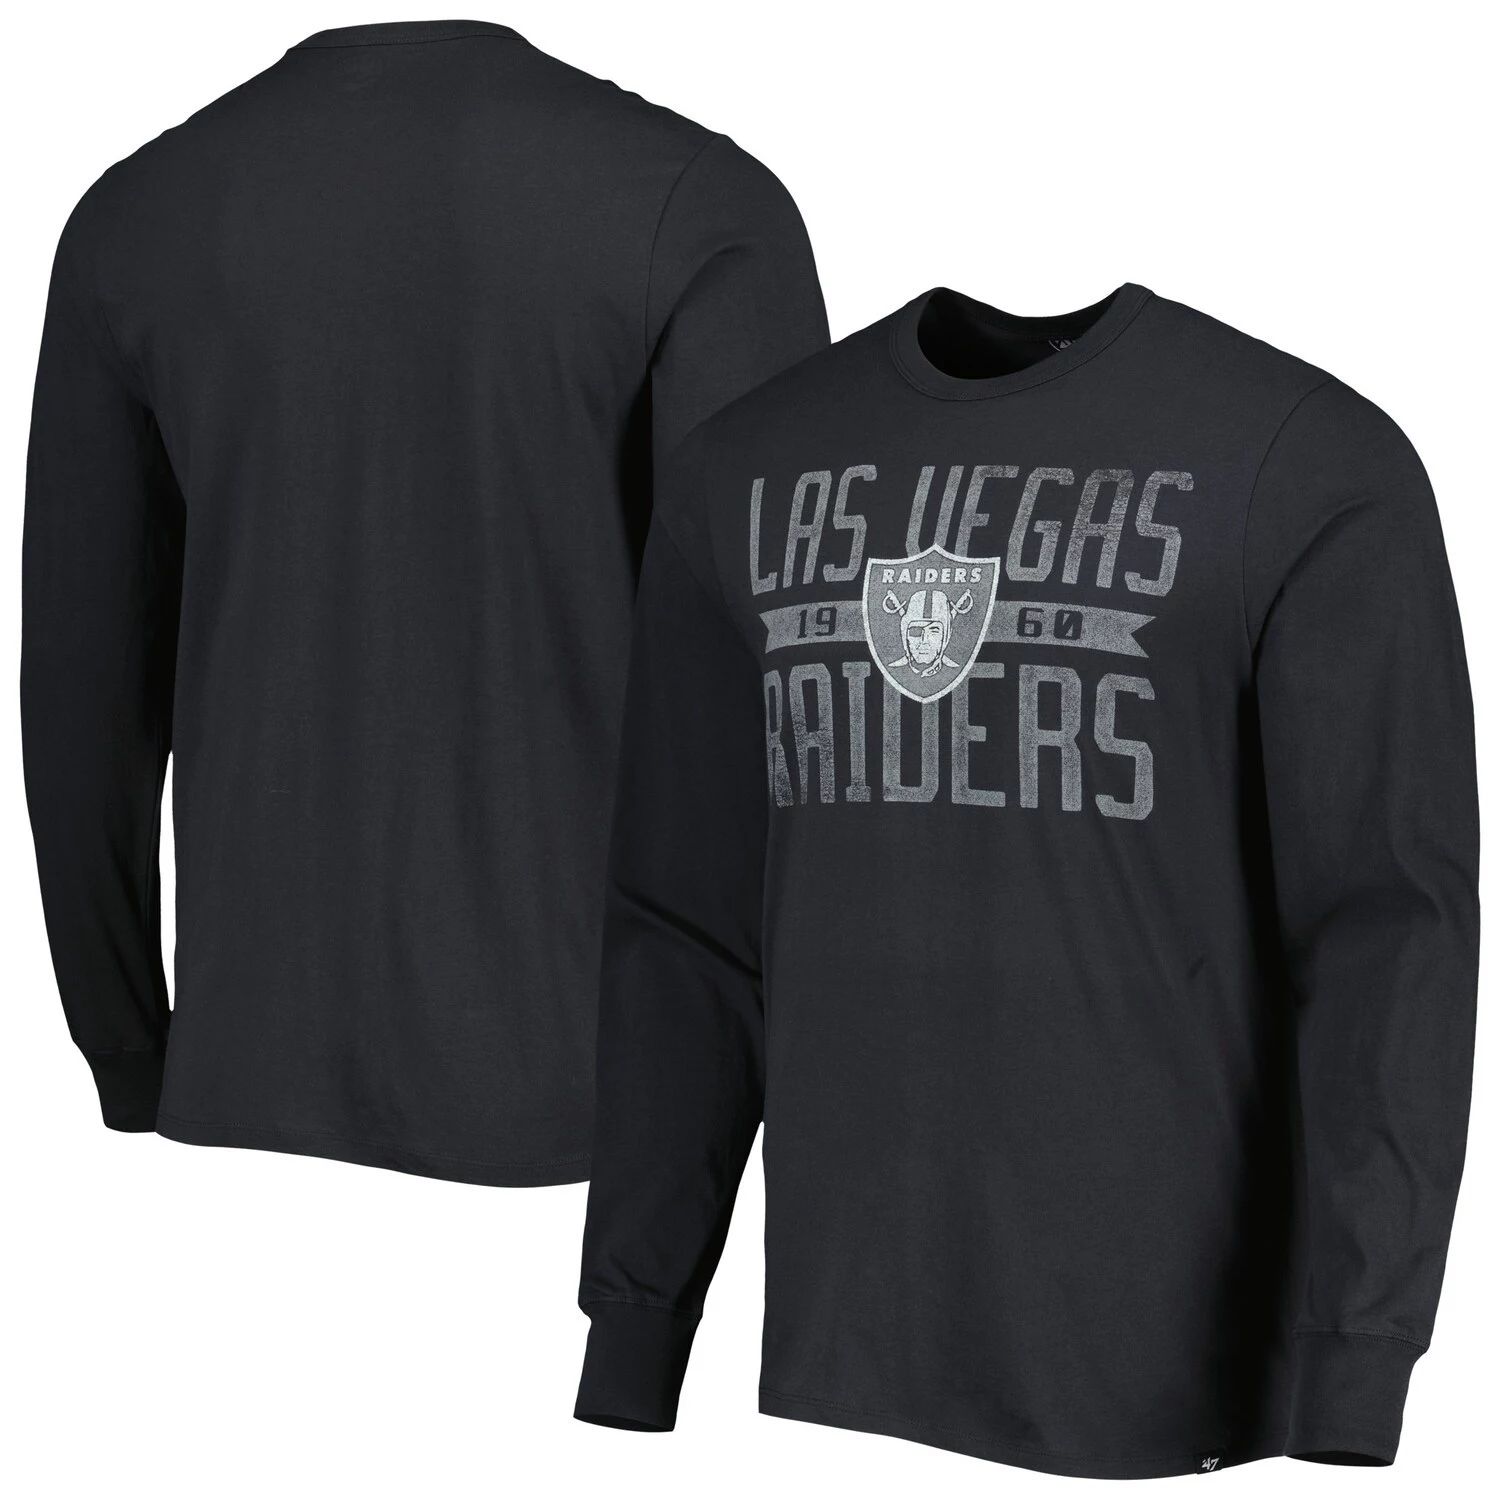 мужская серо черная футболка с капюшоном las vegas raiders franklin wooster с длинными рукавами и меланжевым принтом 47 brand мульти Мужская черная футболка с длинными рукавами с широкими рукавами и логотипом Las Vegas Raiders '47 Franklin